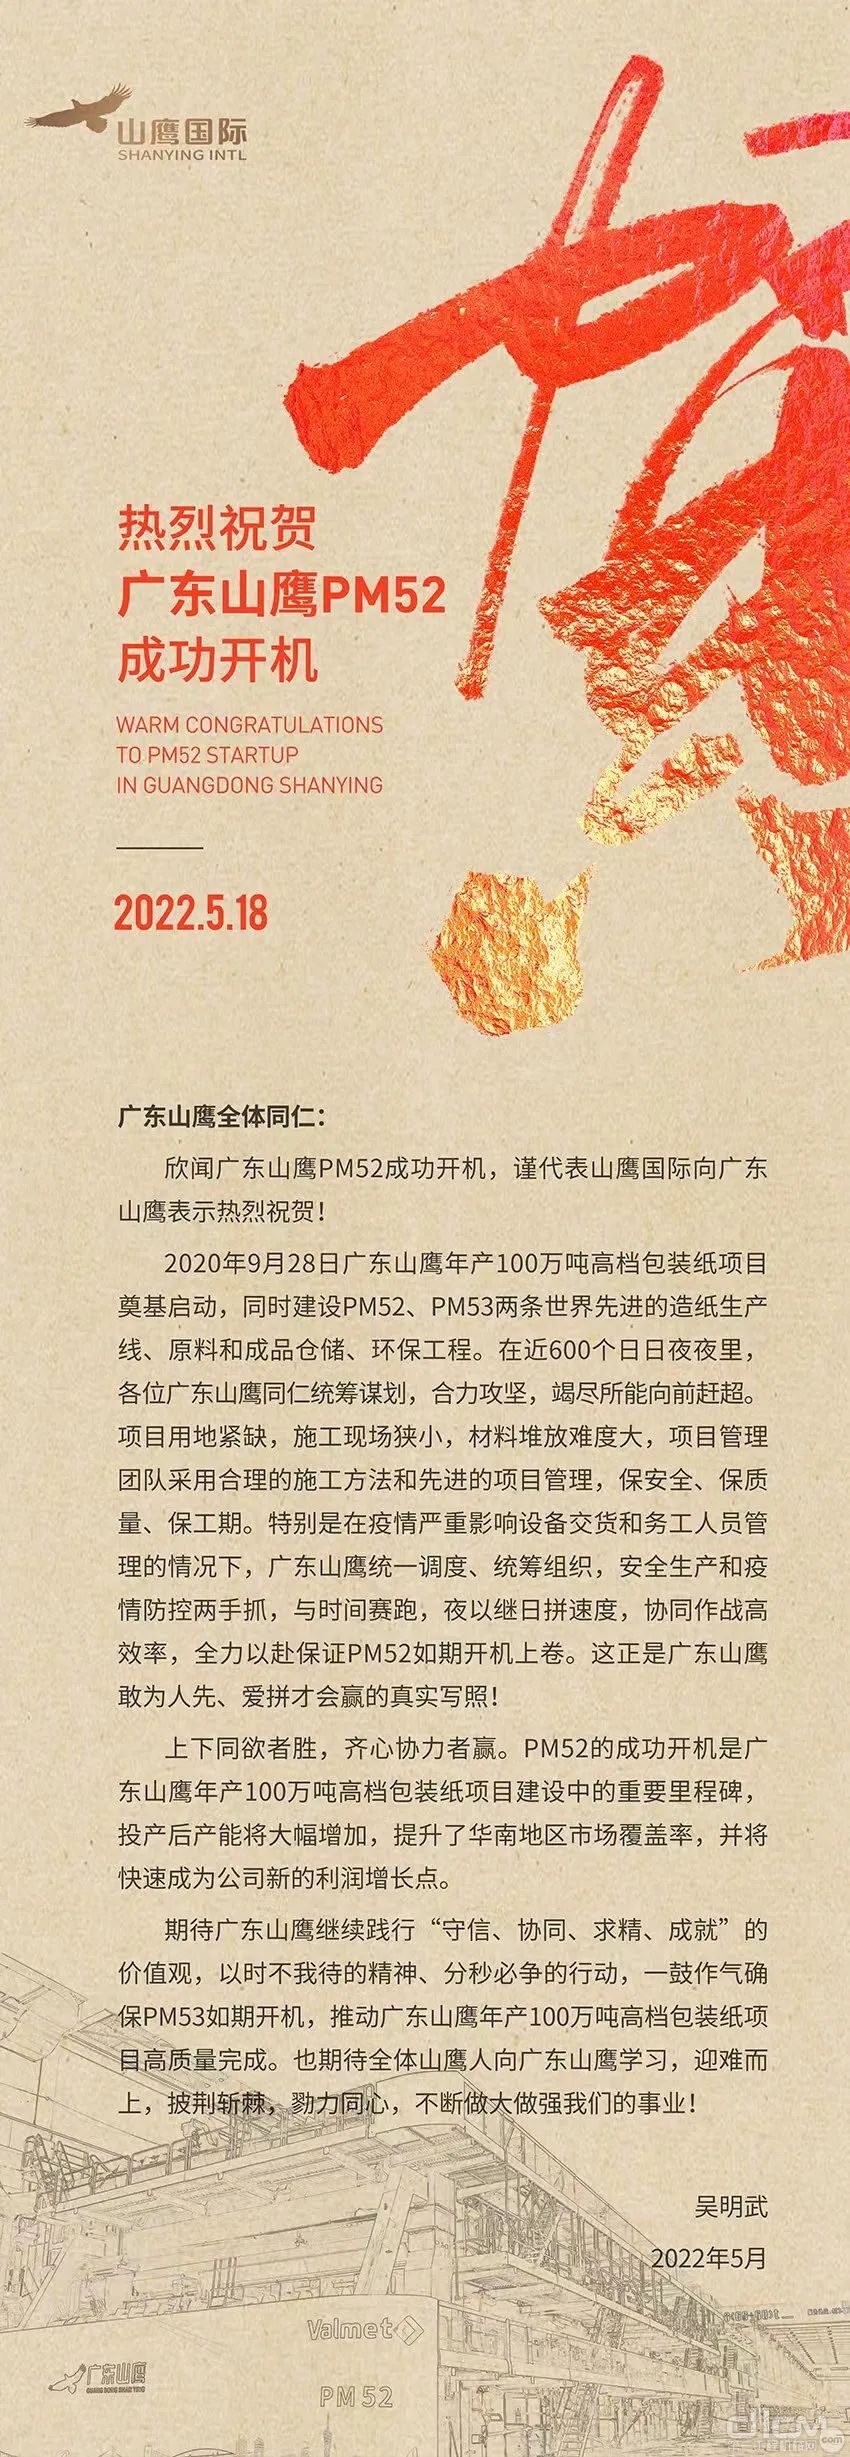 山鹰国际控股股份公司董事长吴明武以线上形式代表山鹰国际对PM52成功开机致以最热烈的祝贺，并发表了贺信